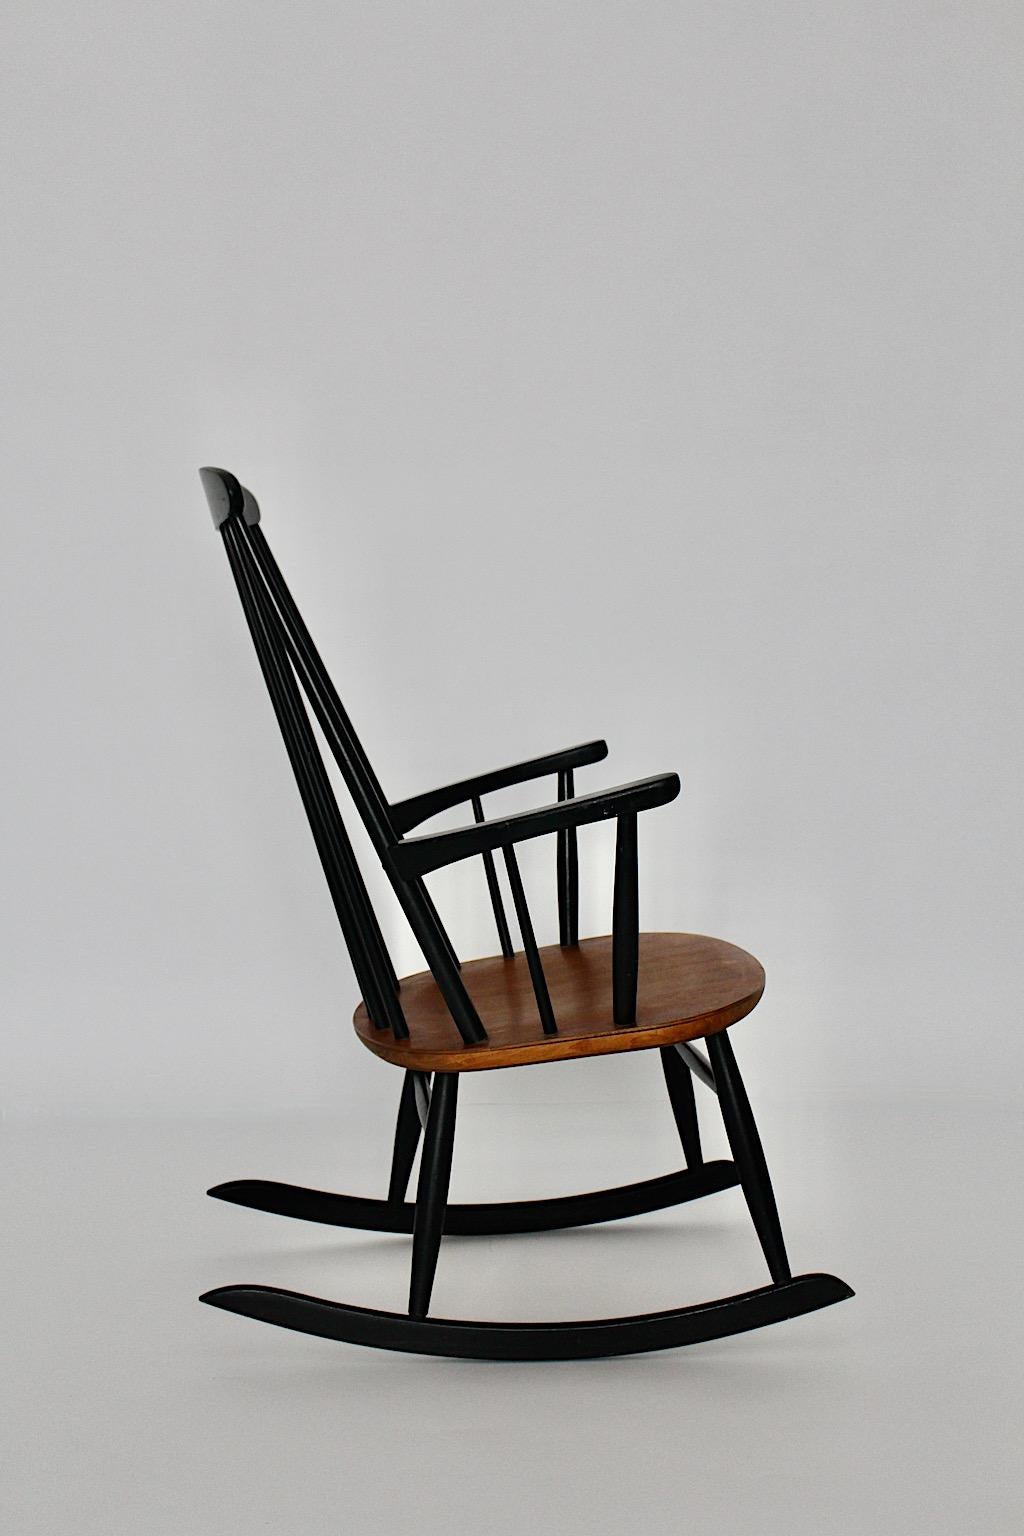 The Scandinavian Modern vintage rocking chair by Ilmari Tapiovaara for Asko 1950s, Finland.
Magnifique fauteuil à bascule en hêtre laqué noir et teck brun naturel avec accoudoirs confortables.
Idéal pour une cheminée comme chaise confortable pour